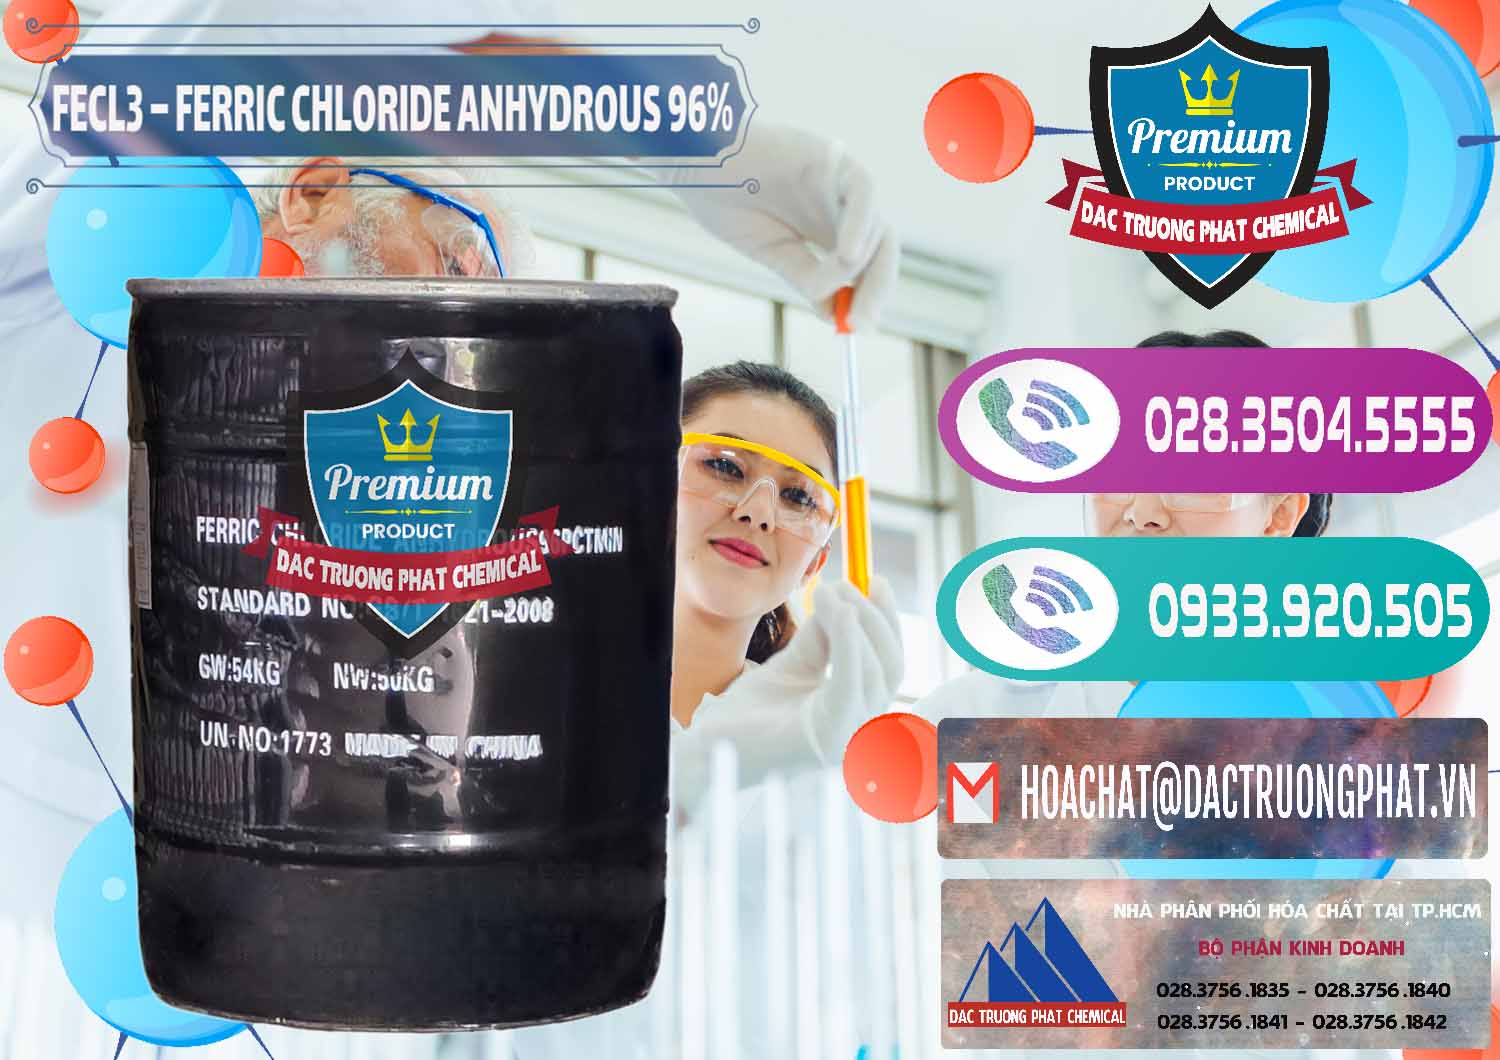 Công ty kinh doanh & bán FECL3 – Ferric Chloride Anhydrous 96% Trung Quốc China - 0065 - Nơi chuyên phân phối _ kinh doanh hóa chất tại TP.HCM - hoachatxulynuoc.com